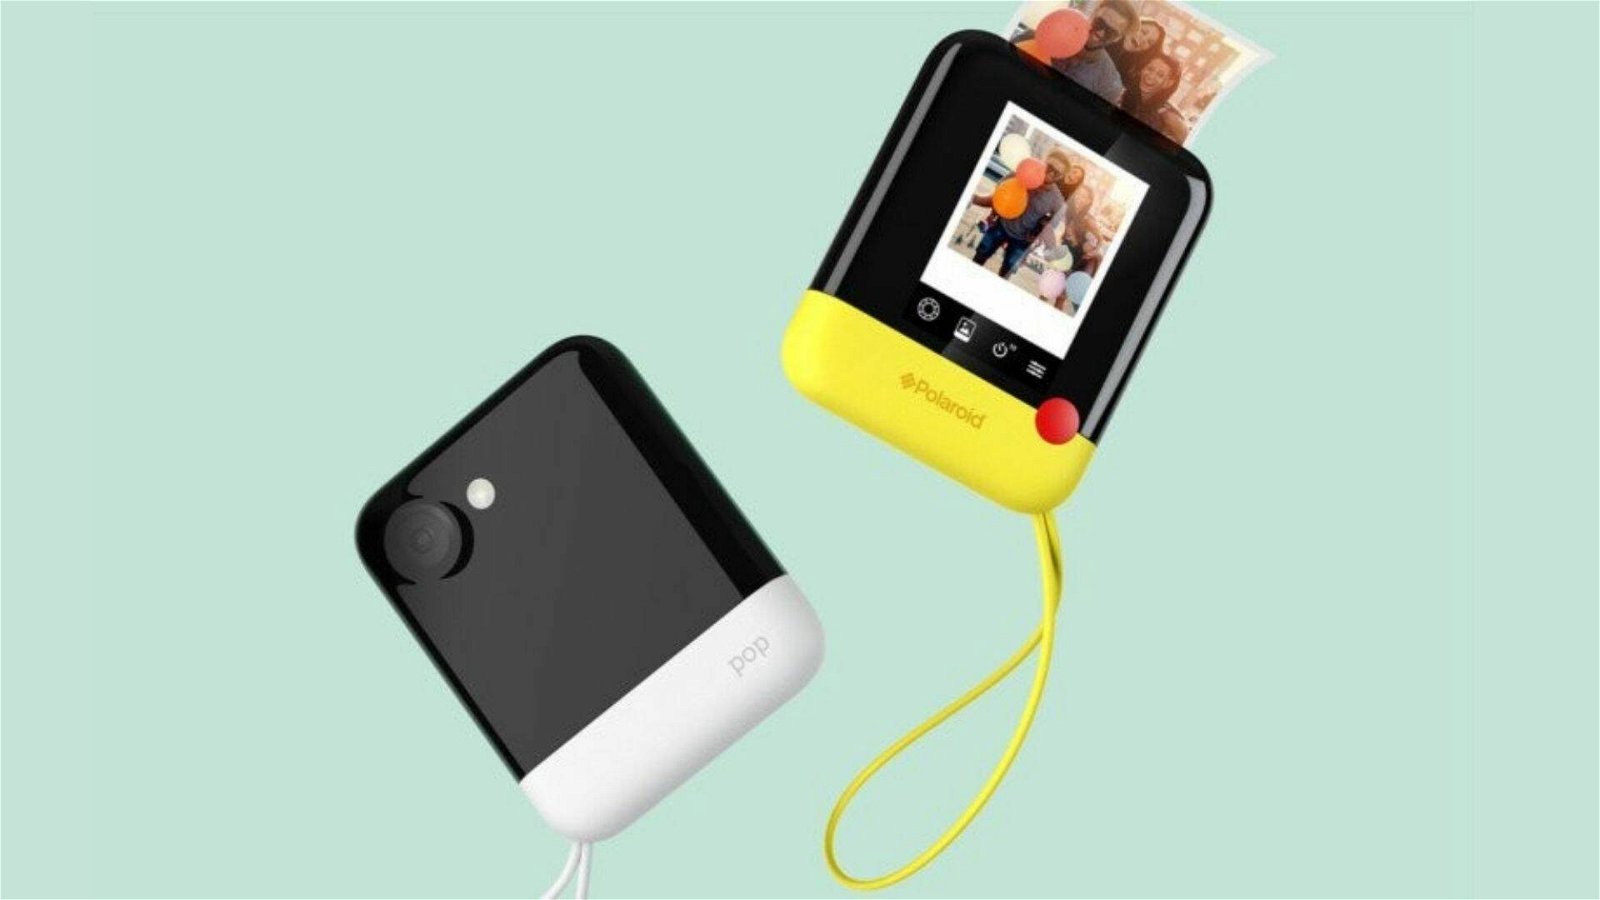 Immagine di Fotocamera istantanea Polaroid Pro a 149€ nelle offerte del giorno eBay!